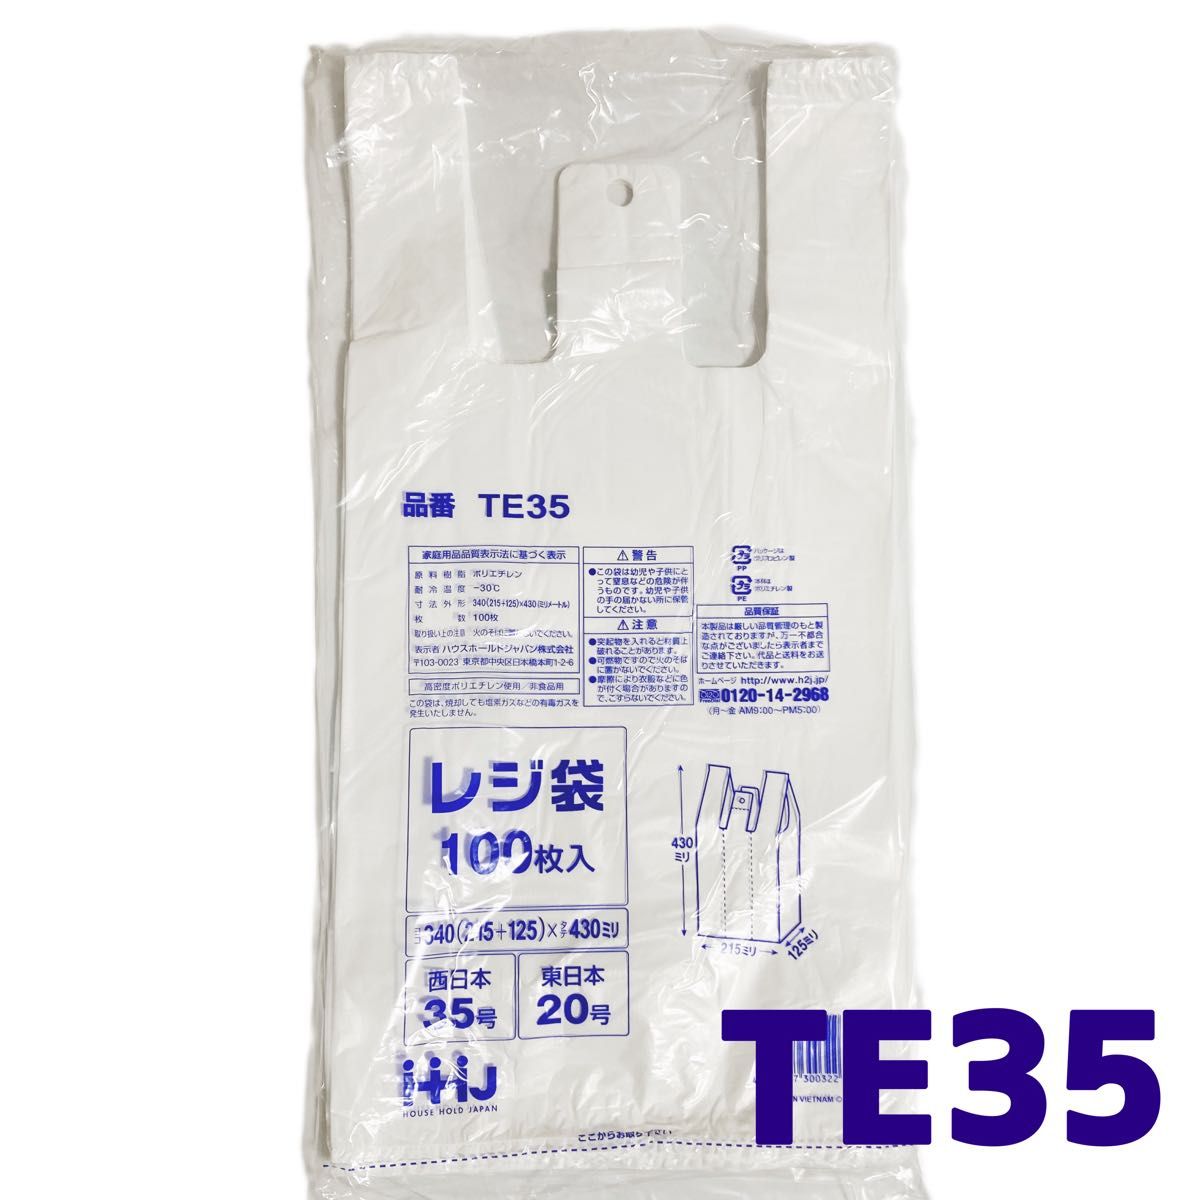 レジ袋 M 200枚 乳白色 無地 エコバッグ 手提げ袋 買い物袋 スーパーの袋 ビニール袋 ポリ袋 ゴミ袋 TE35